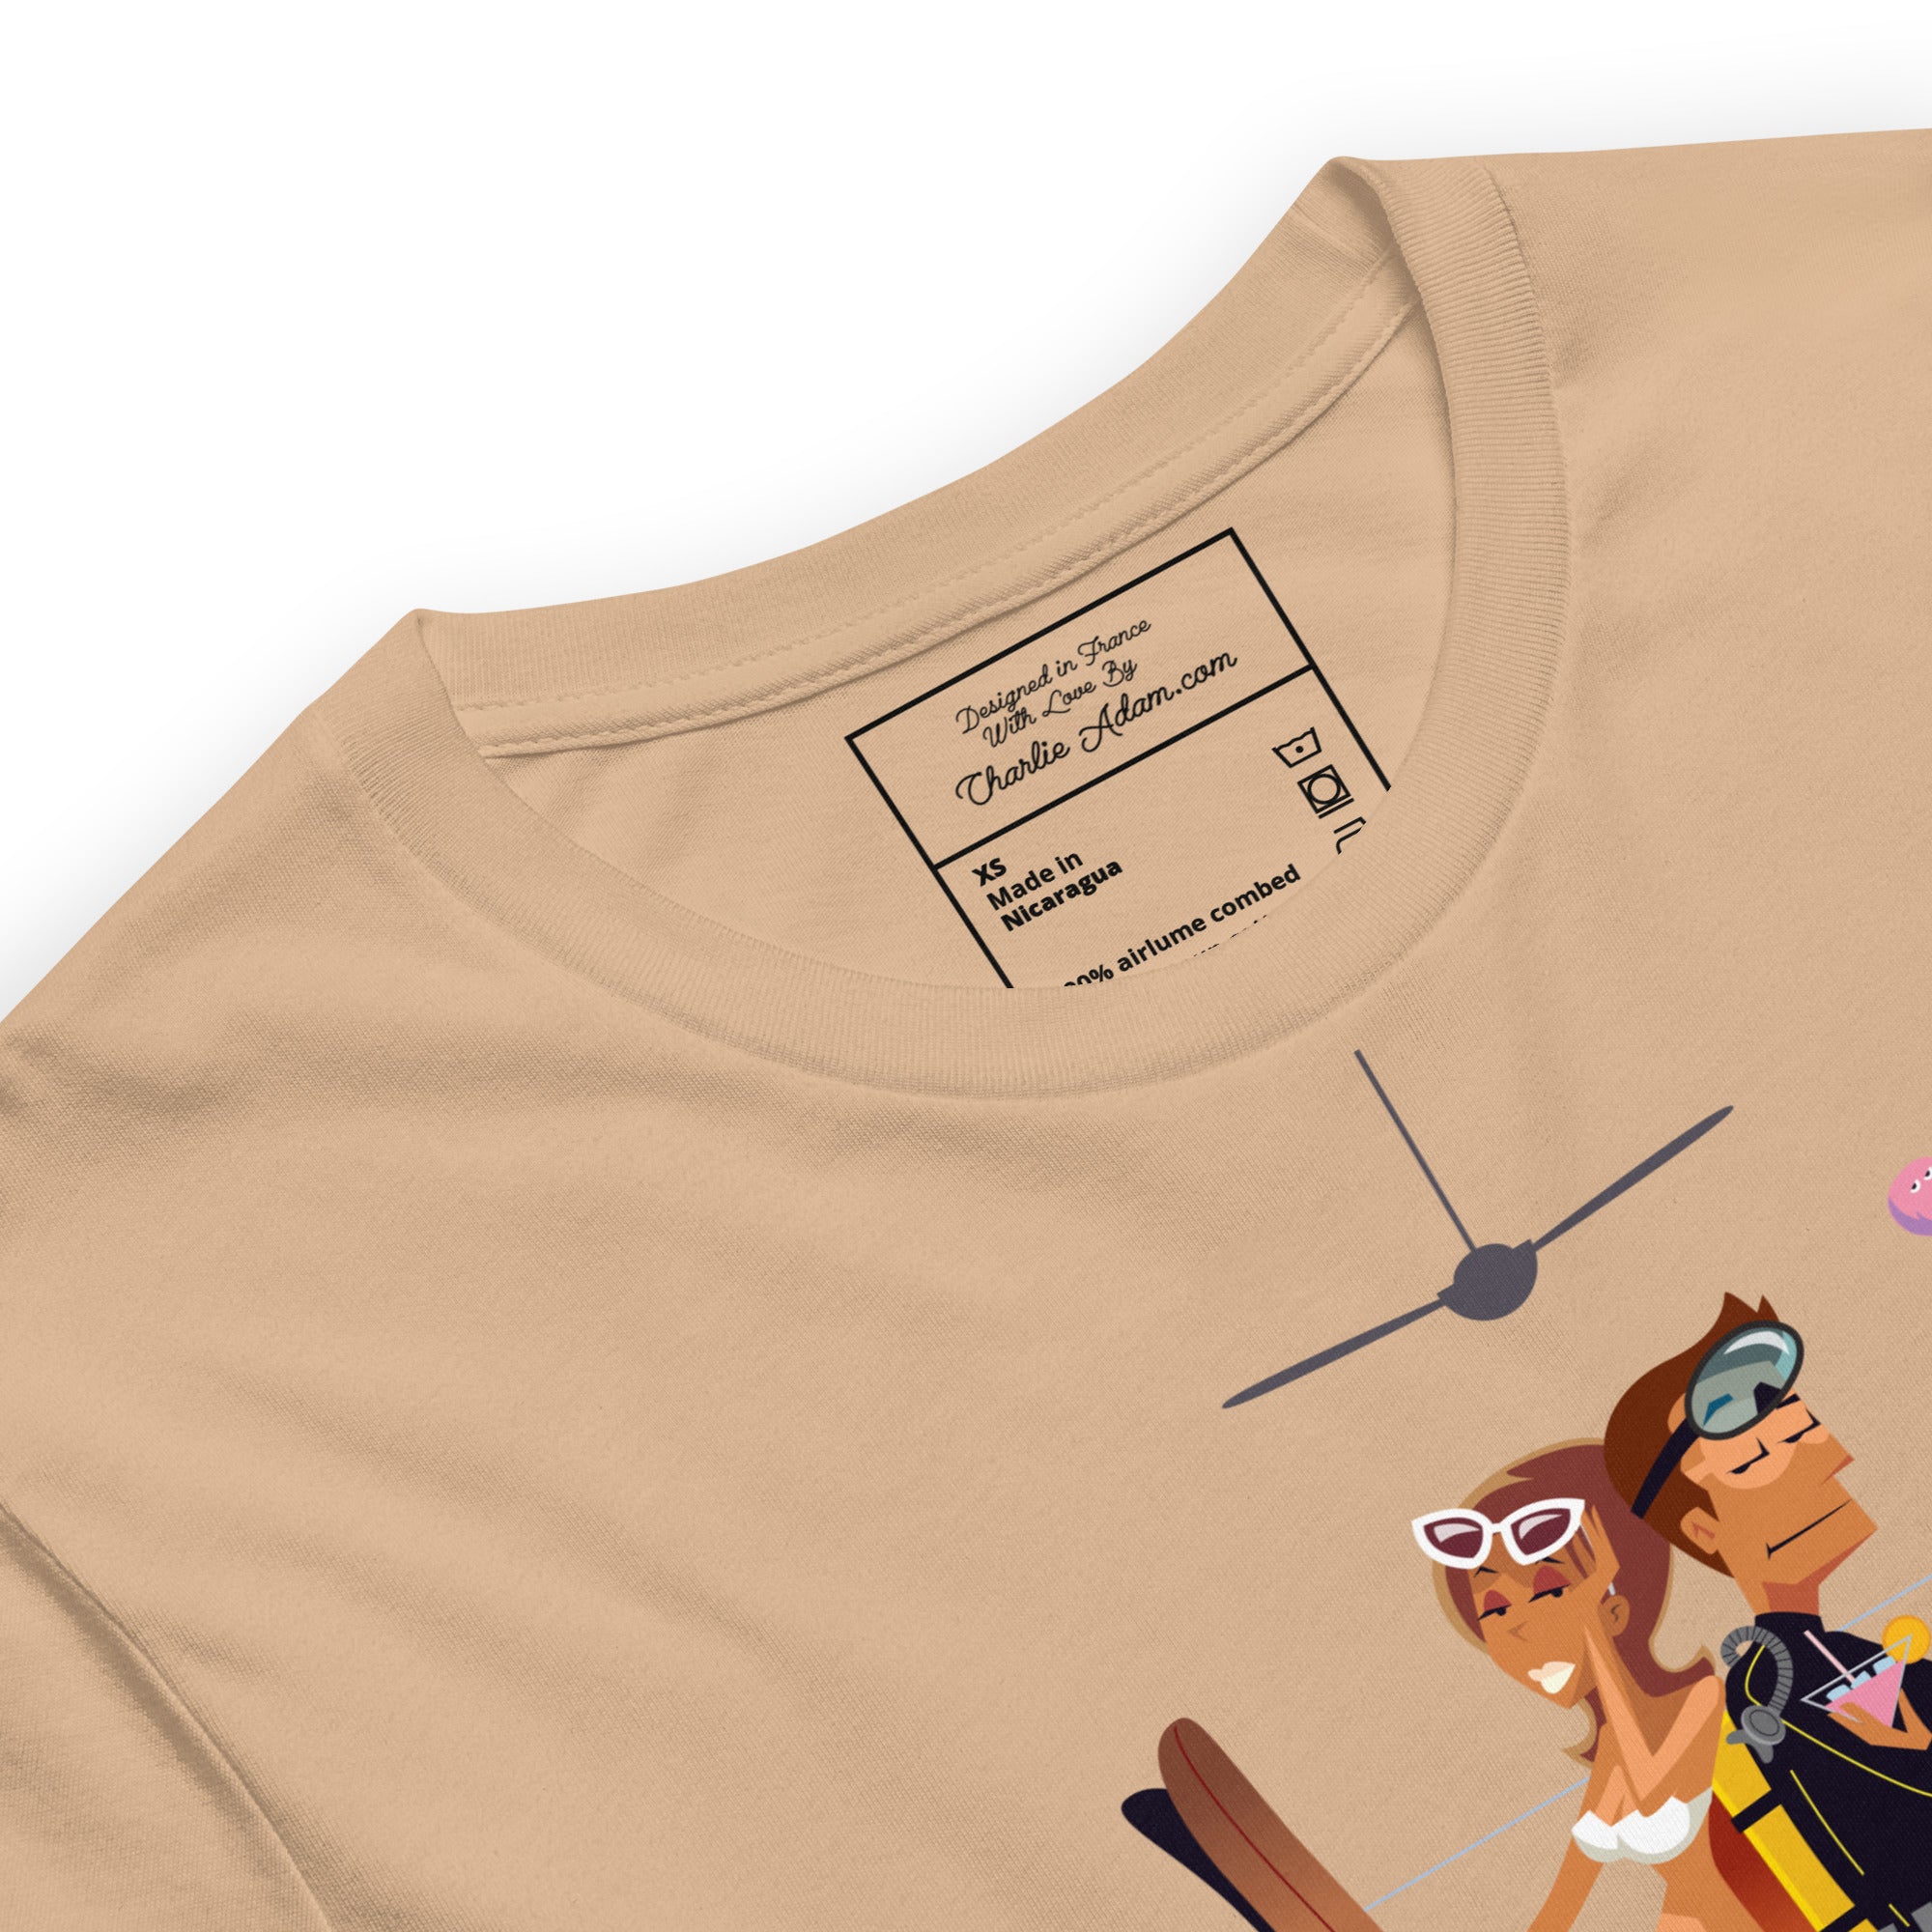 T-shirt en coton unisexe License to Chill Vamos a la Playa sur couleurs vives